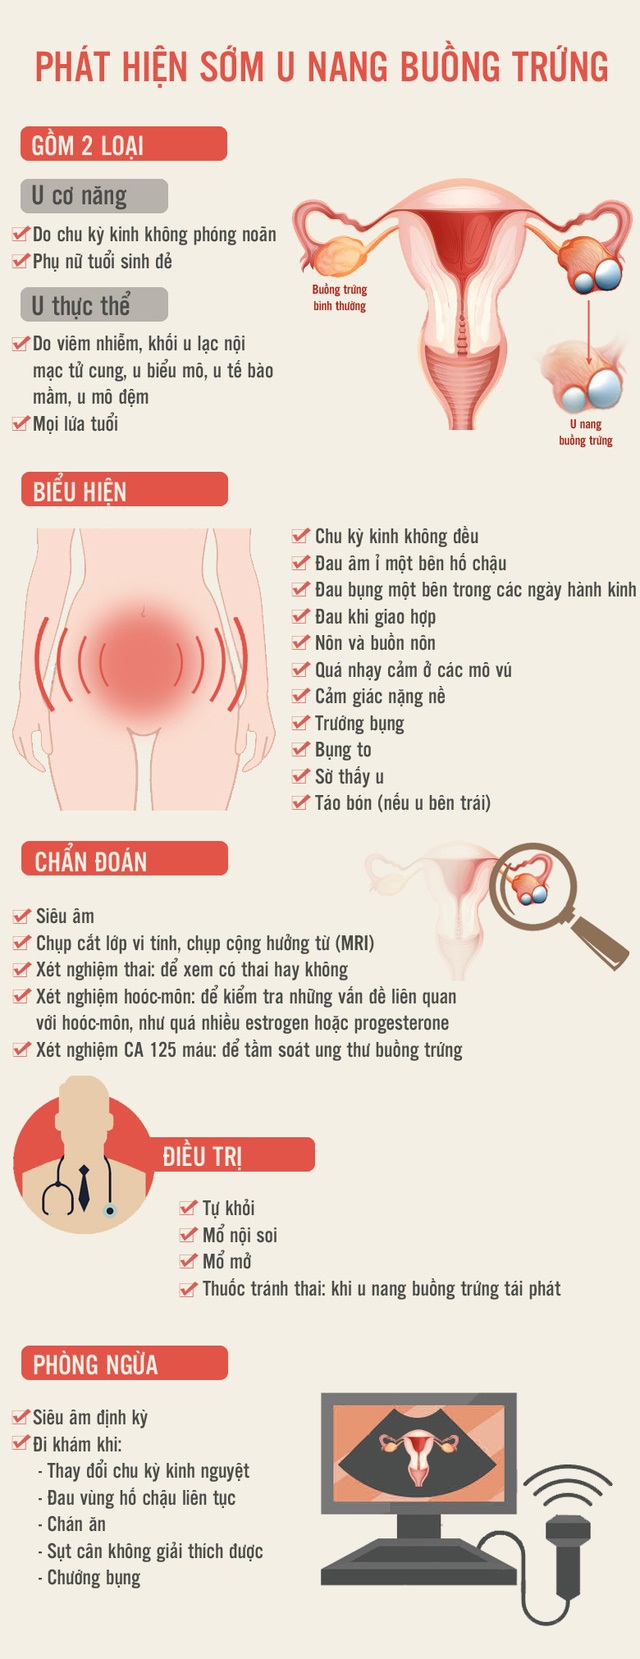 [Infographic]- U nang buồng trứng, nhận biết và điều trị